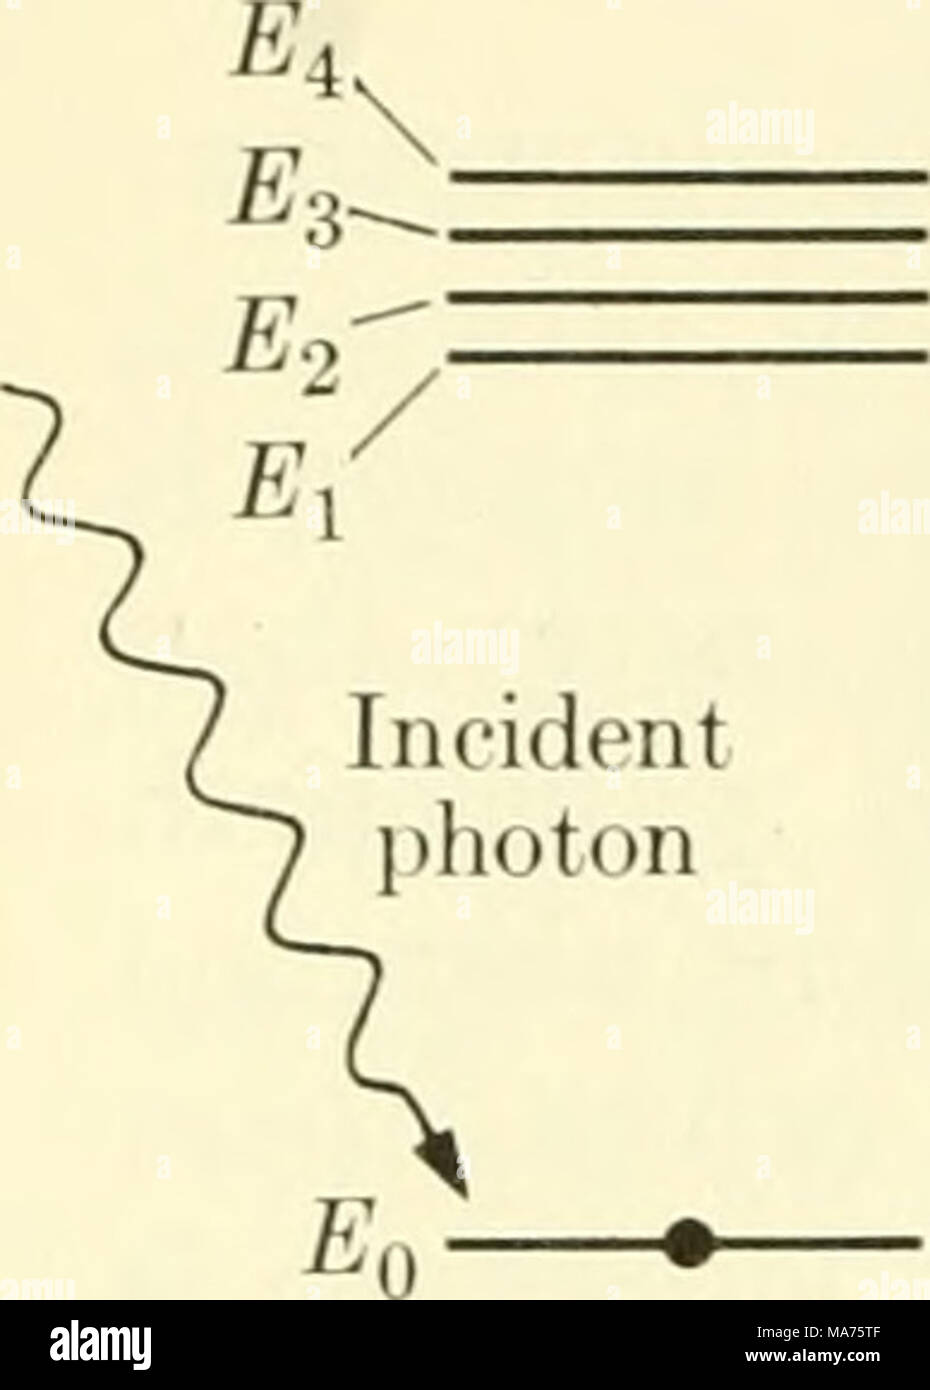 . Biophysique élémentaire : thèmes choisis . Electron est à ni- mal ou au sol au moment de l'état /  = 0 sec électron est dans un état excité après avoir absorbé l'énergie des photons E^ - Eq après 1 = 108 sec (a) a perdu un peu d'électrons énergie d'excitation est à l'état excité le plus bas autorisé dans 10-n-10-8 sec après avoir atteint l'Es Banque D'Images